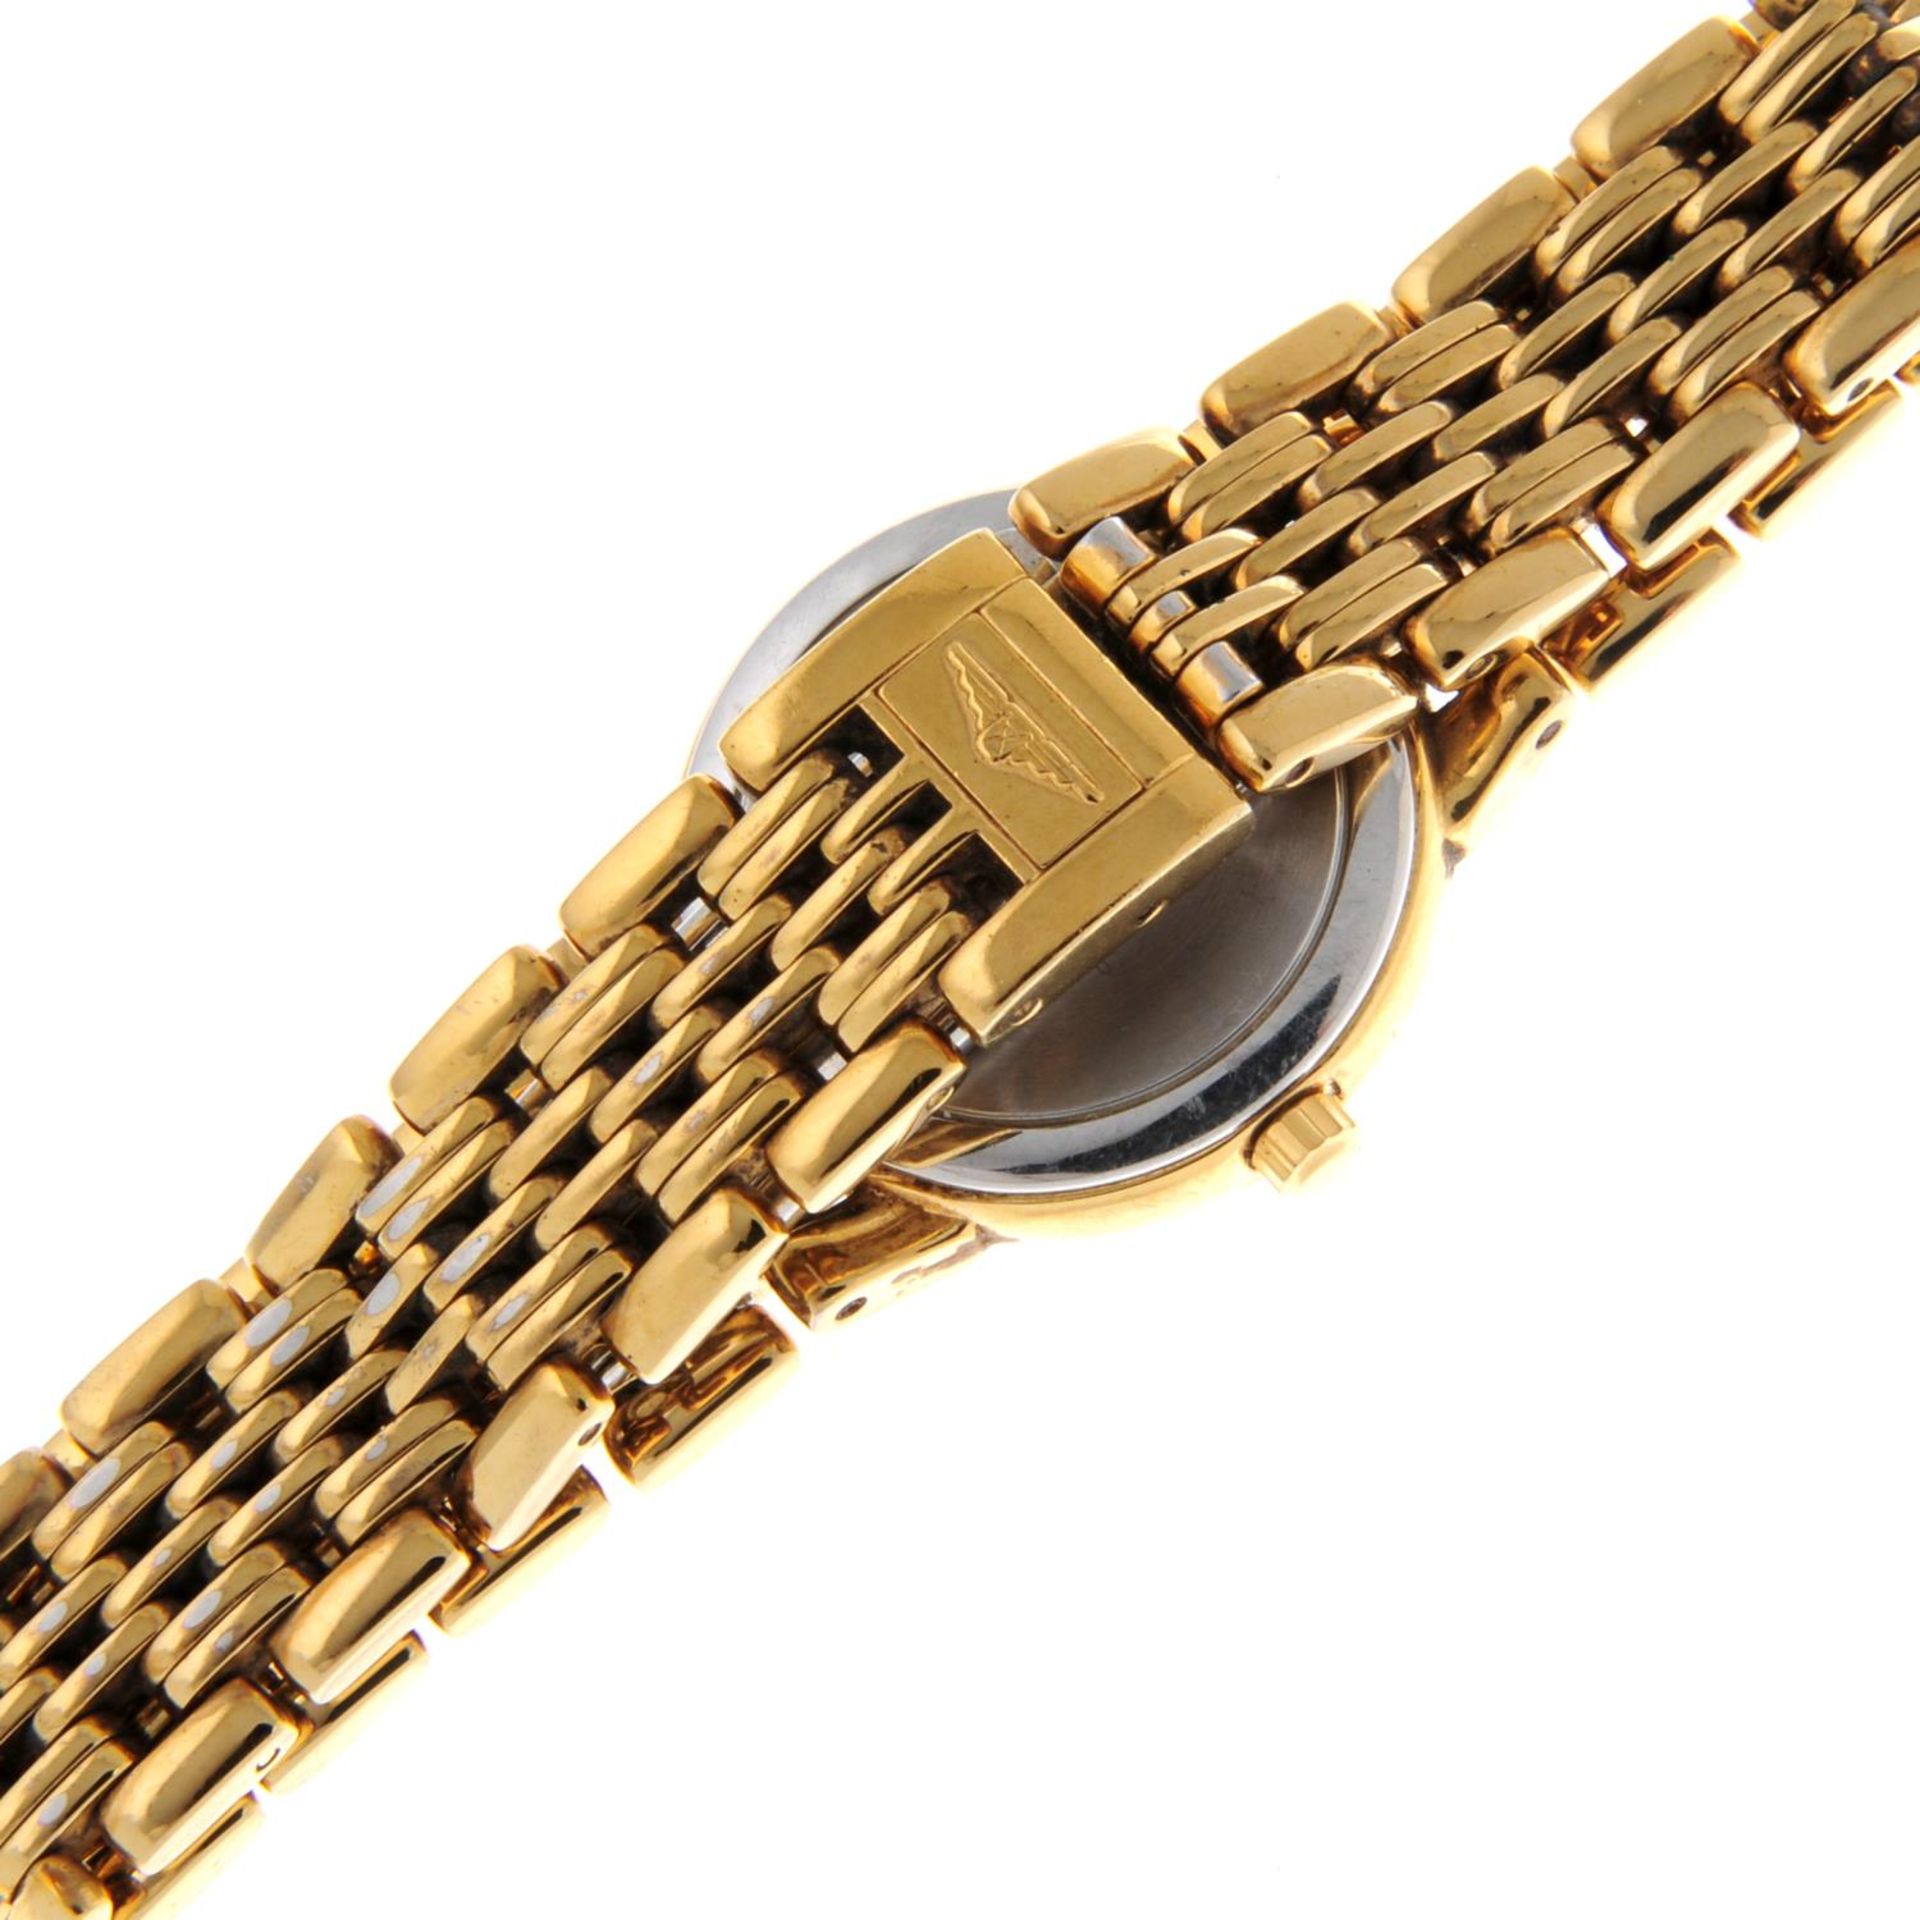 LONGINES - a Les Grandes Classiques bracelet watch. - Image 2 of 6